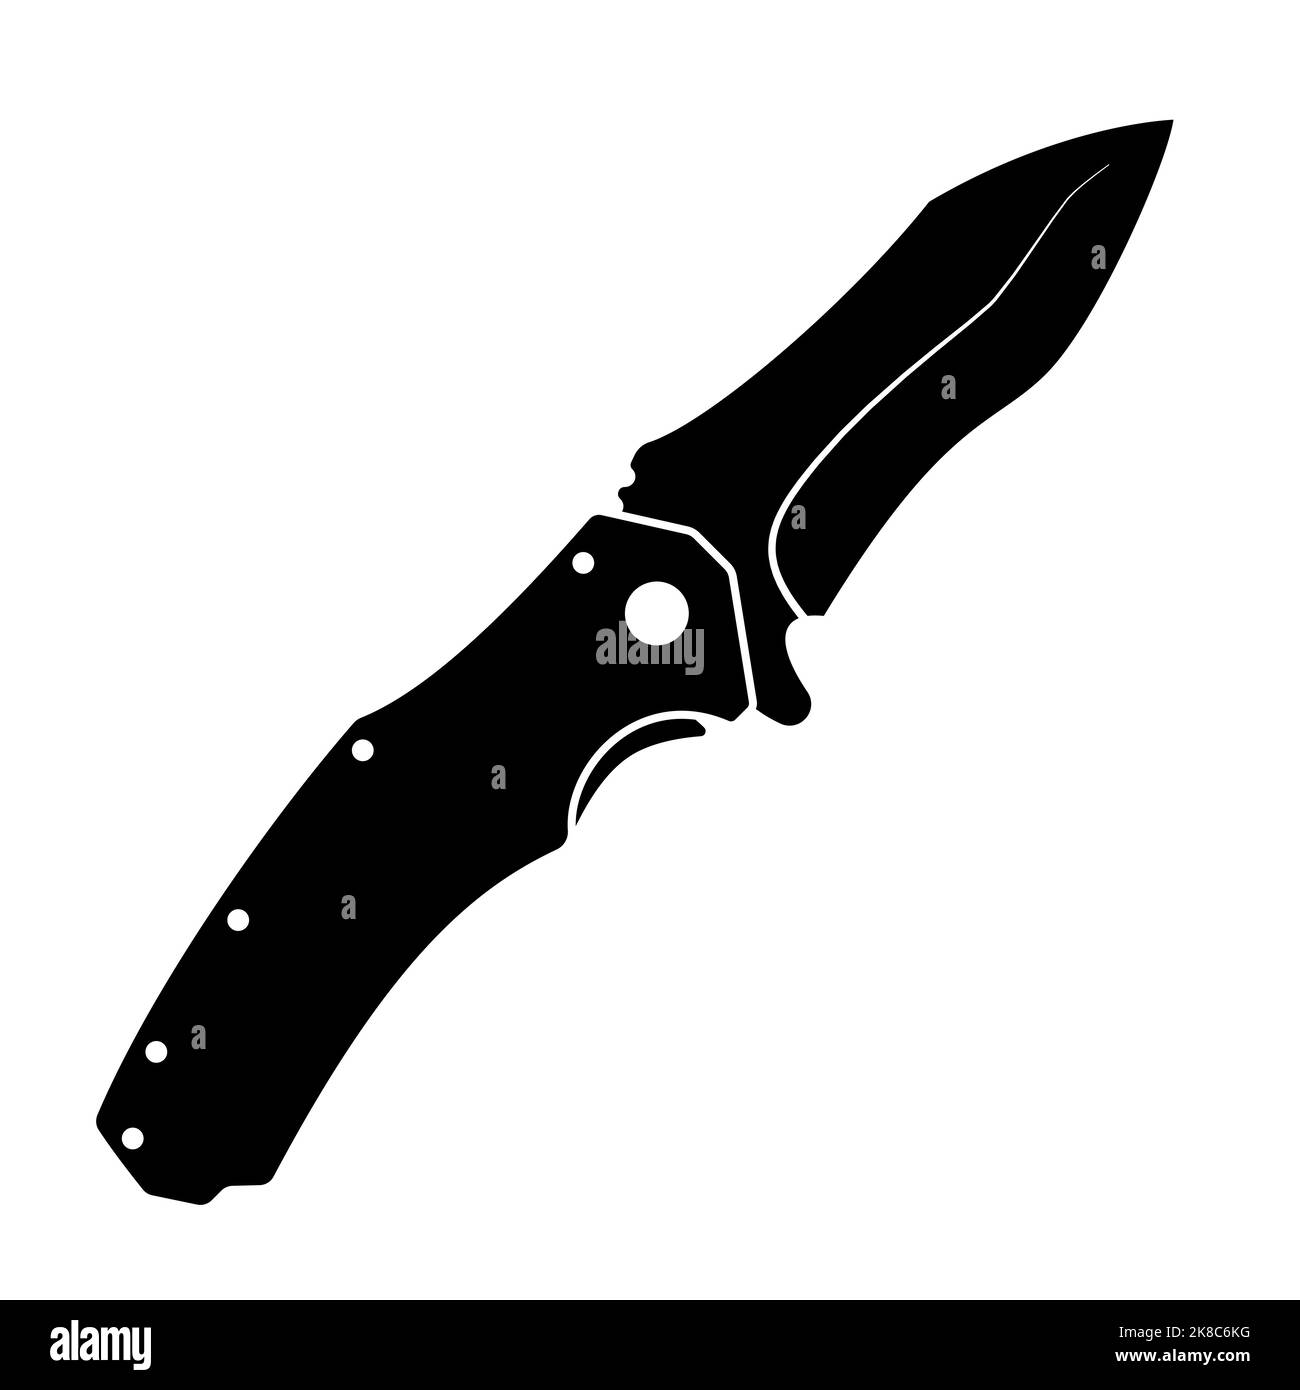 Icona della controlama. Icona nera a forma di coltello pieghevole isolata su sfondo bianco. Illustrazione vettoriale in piano. Illustrazione Vettoriale